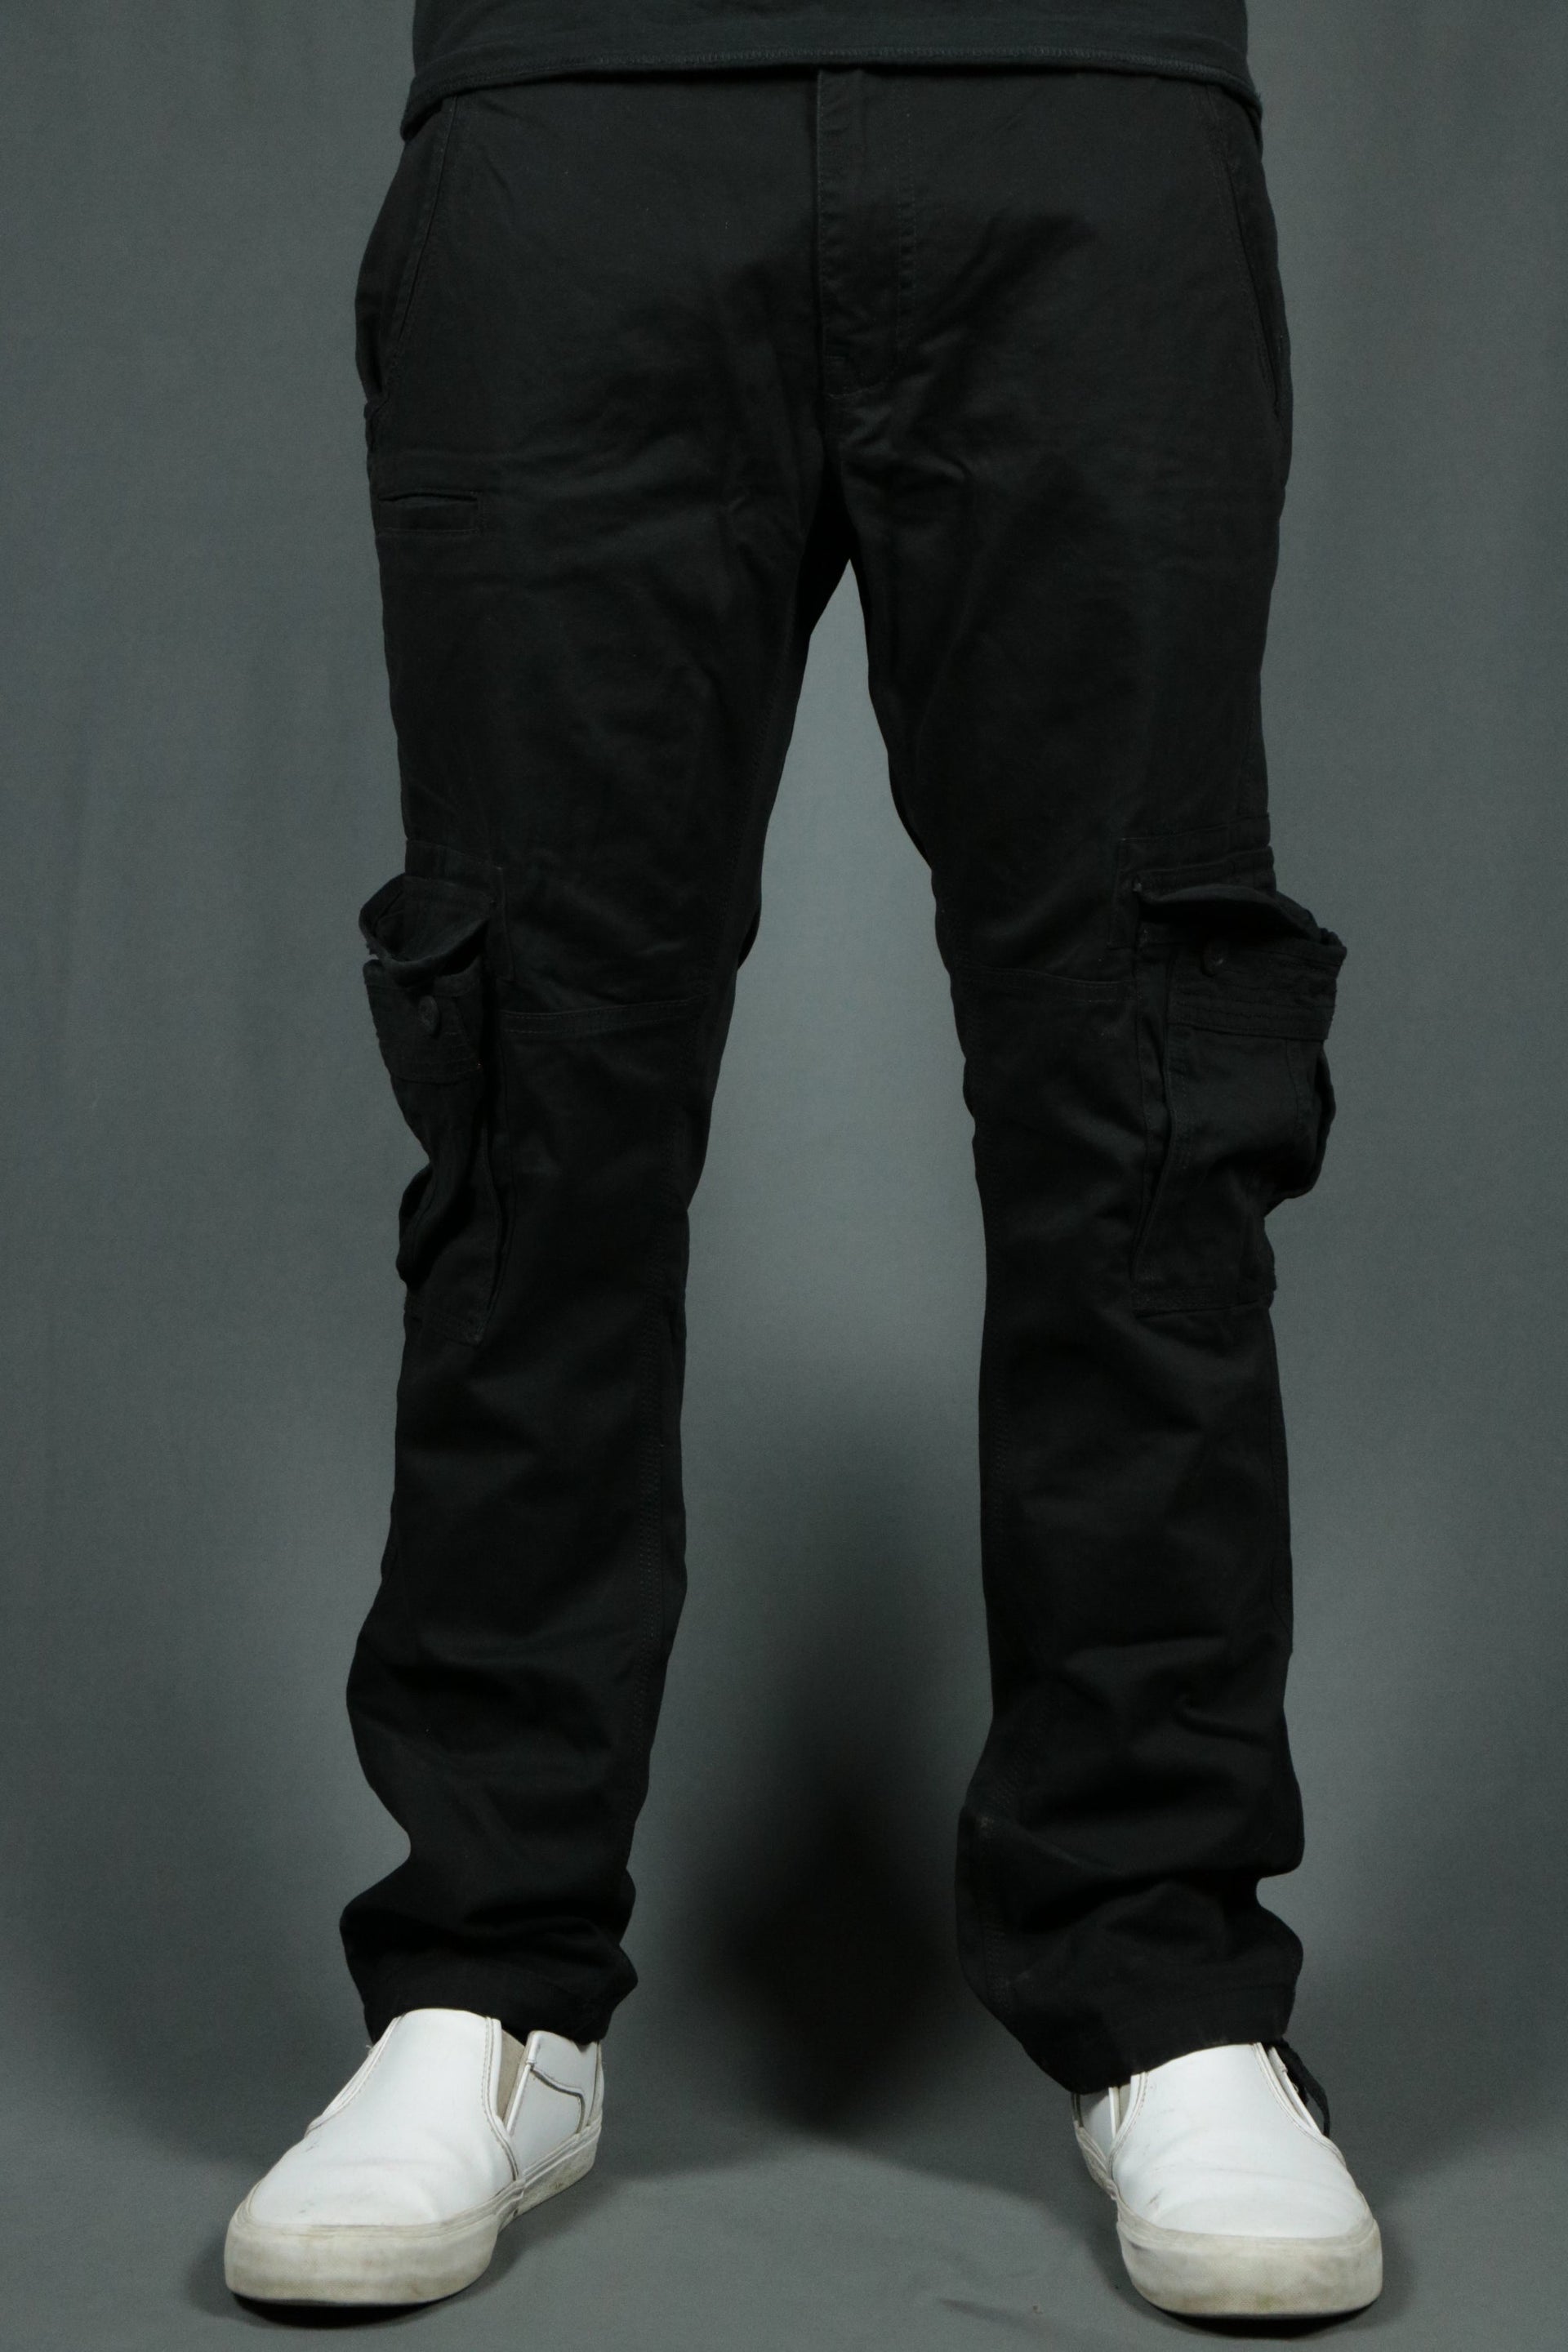 The black Jordan Craig 6 pocket utility cargo pants.